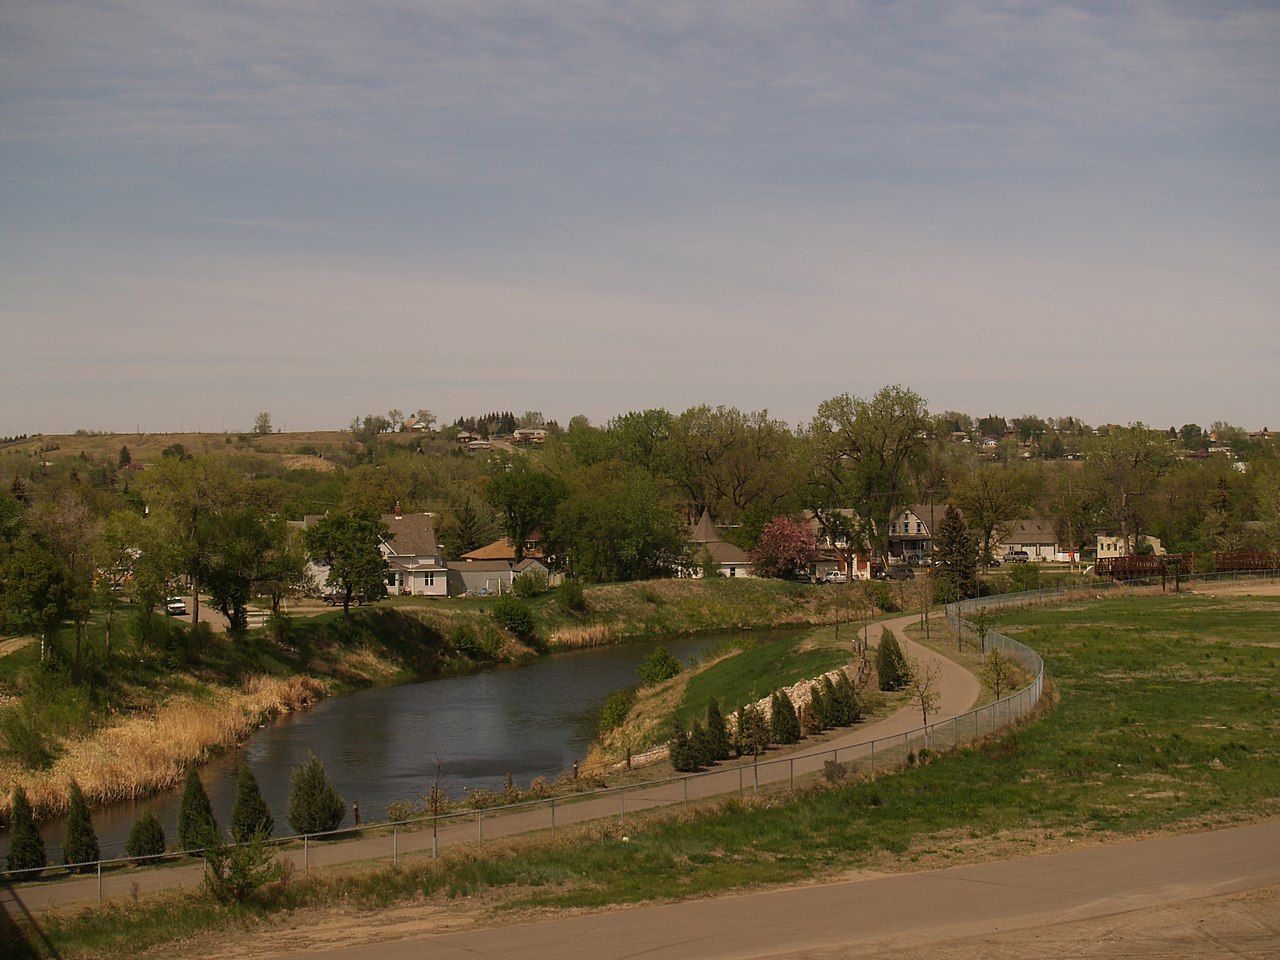 Scene of water in Minot North Dakota